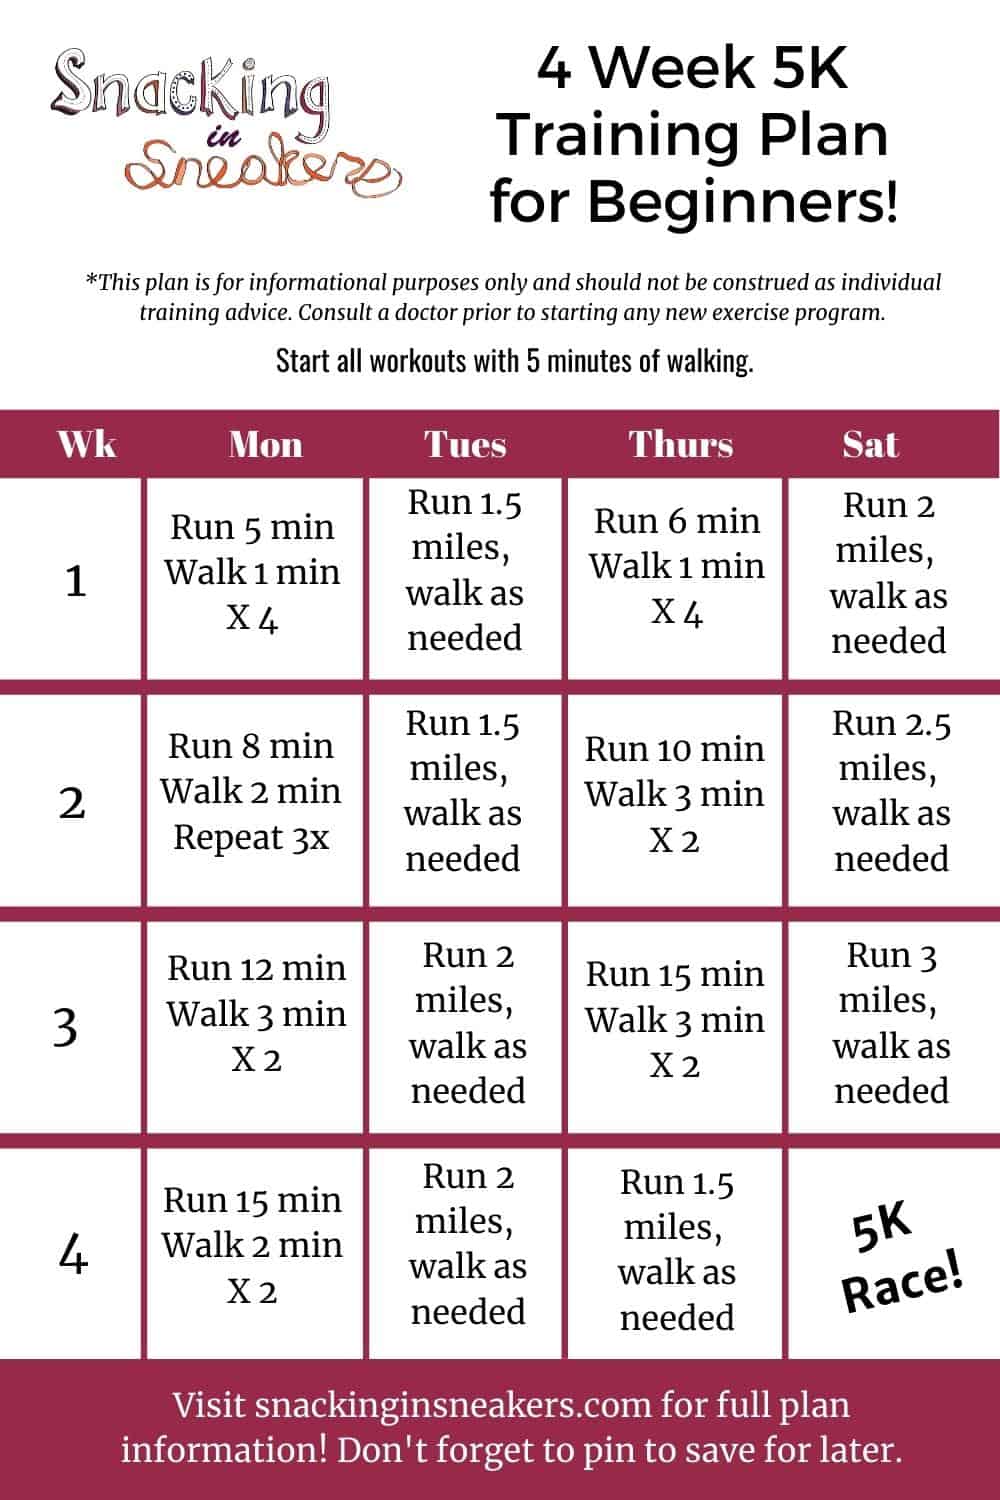 4-week running plan to start running again